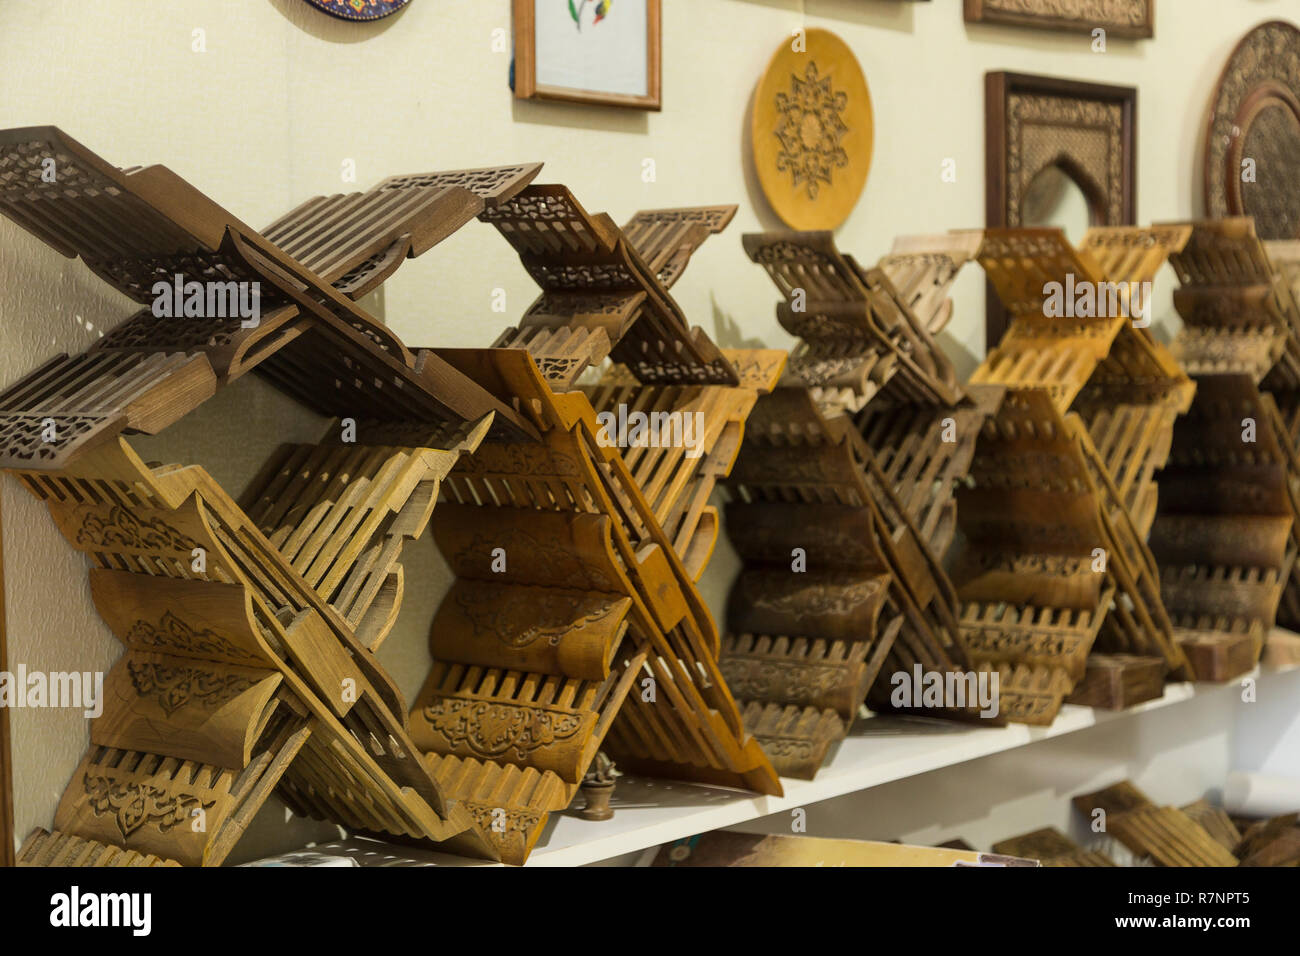 Speichern der geniale rihals. Holz- Buch steht in Buchara, Usbekistan. Holly Quran Kuran Koran buch Inhaber steht Shop. Schöne Kunstwerke, geschnitzte Stockfoto